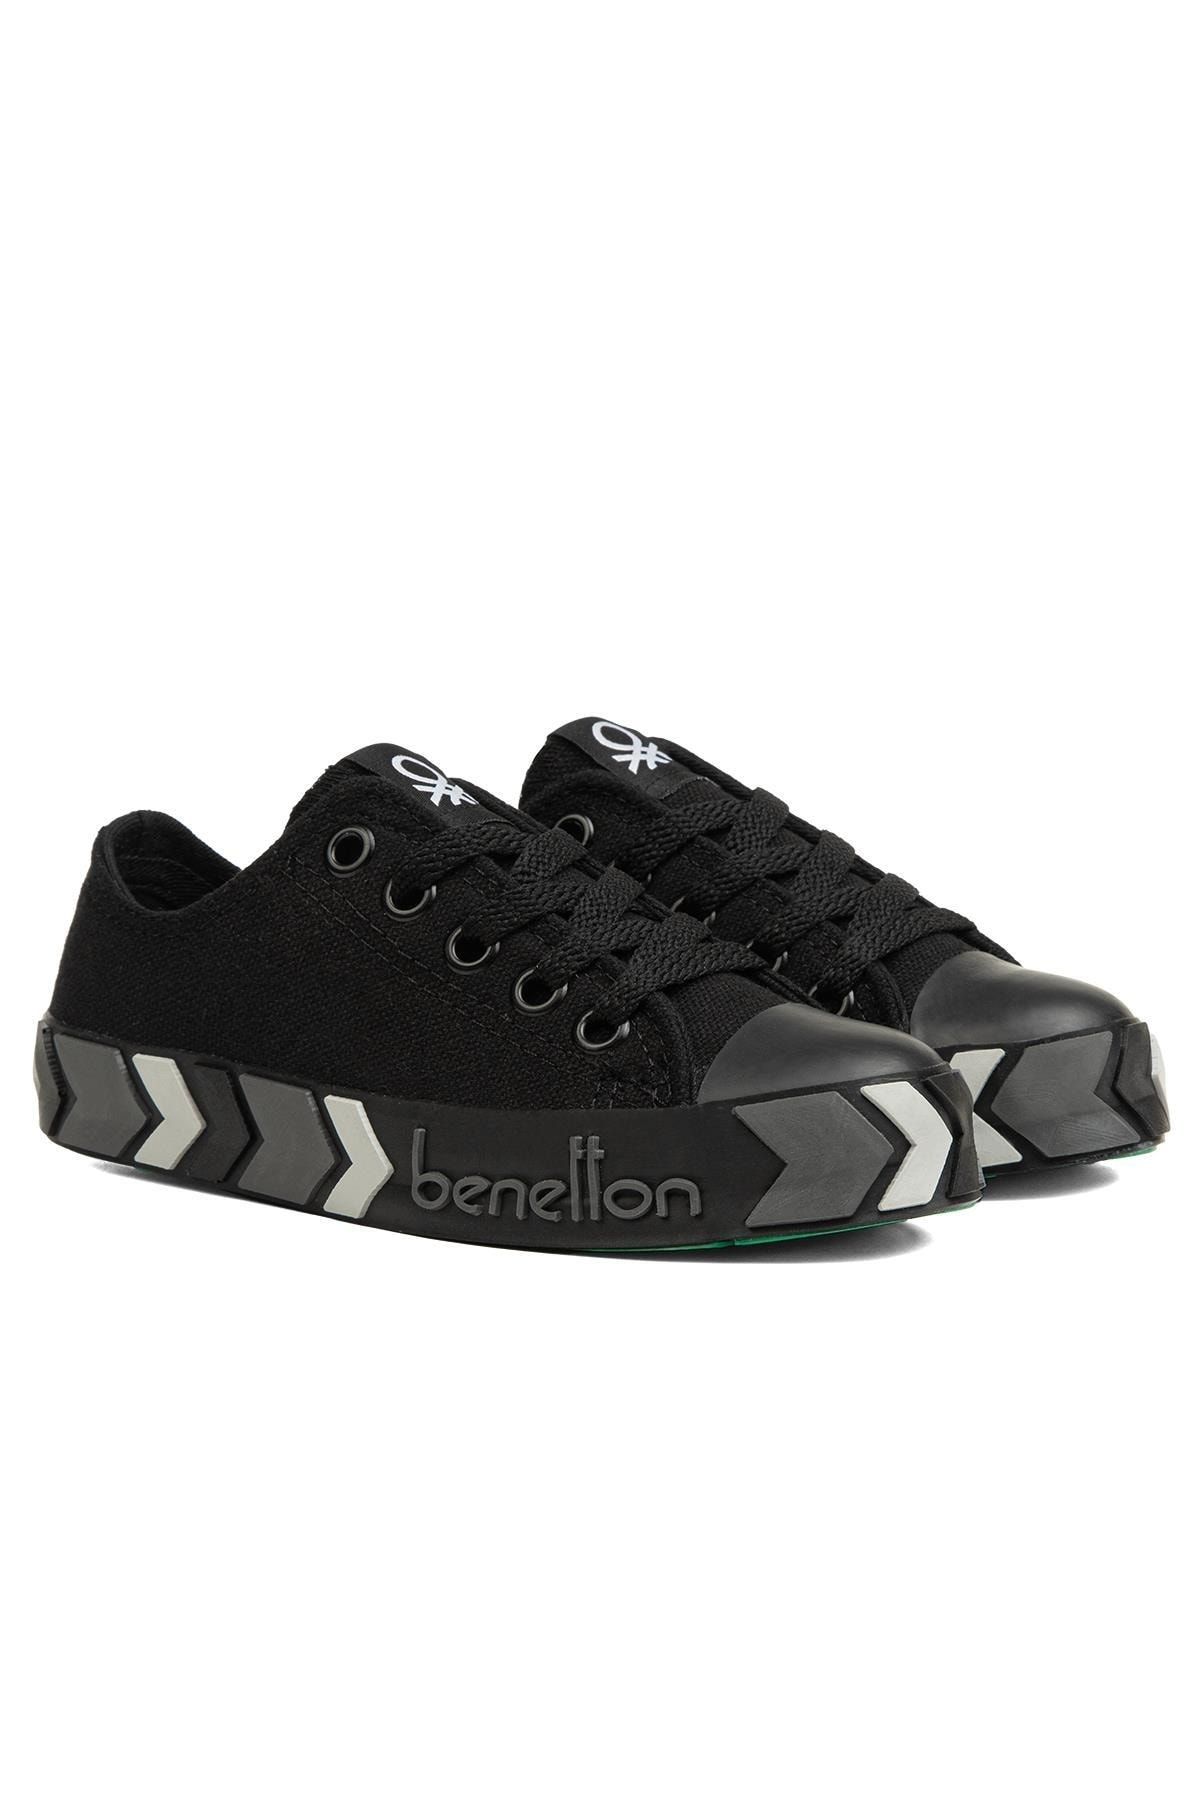 Benetton ® | Bn-90633-3409 Siyah Siyah - Çocuk Spor Ayakkabı